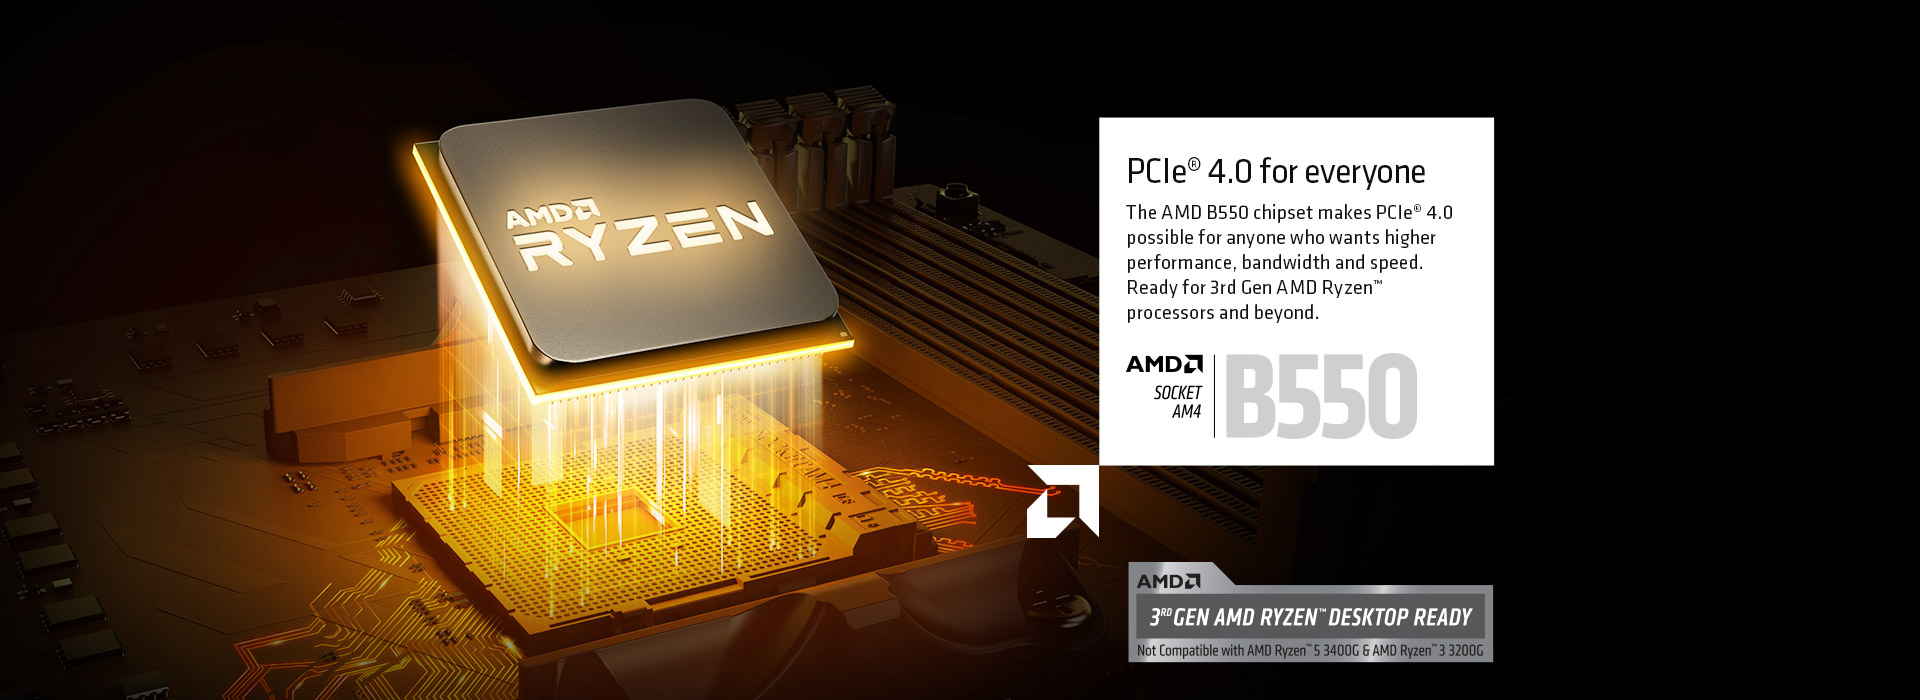 AMD RYZEN of the motherboard